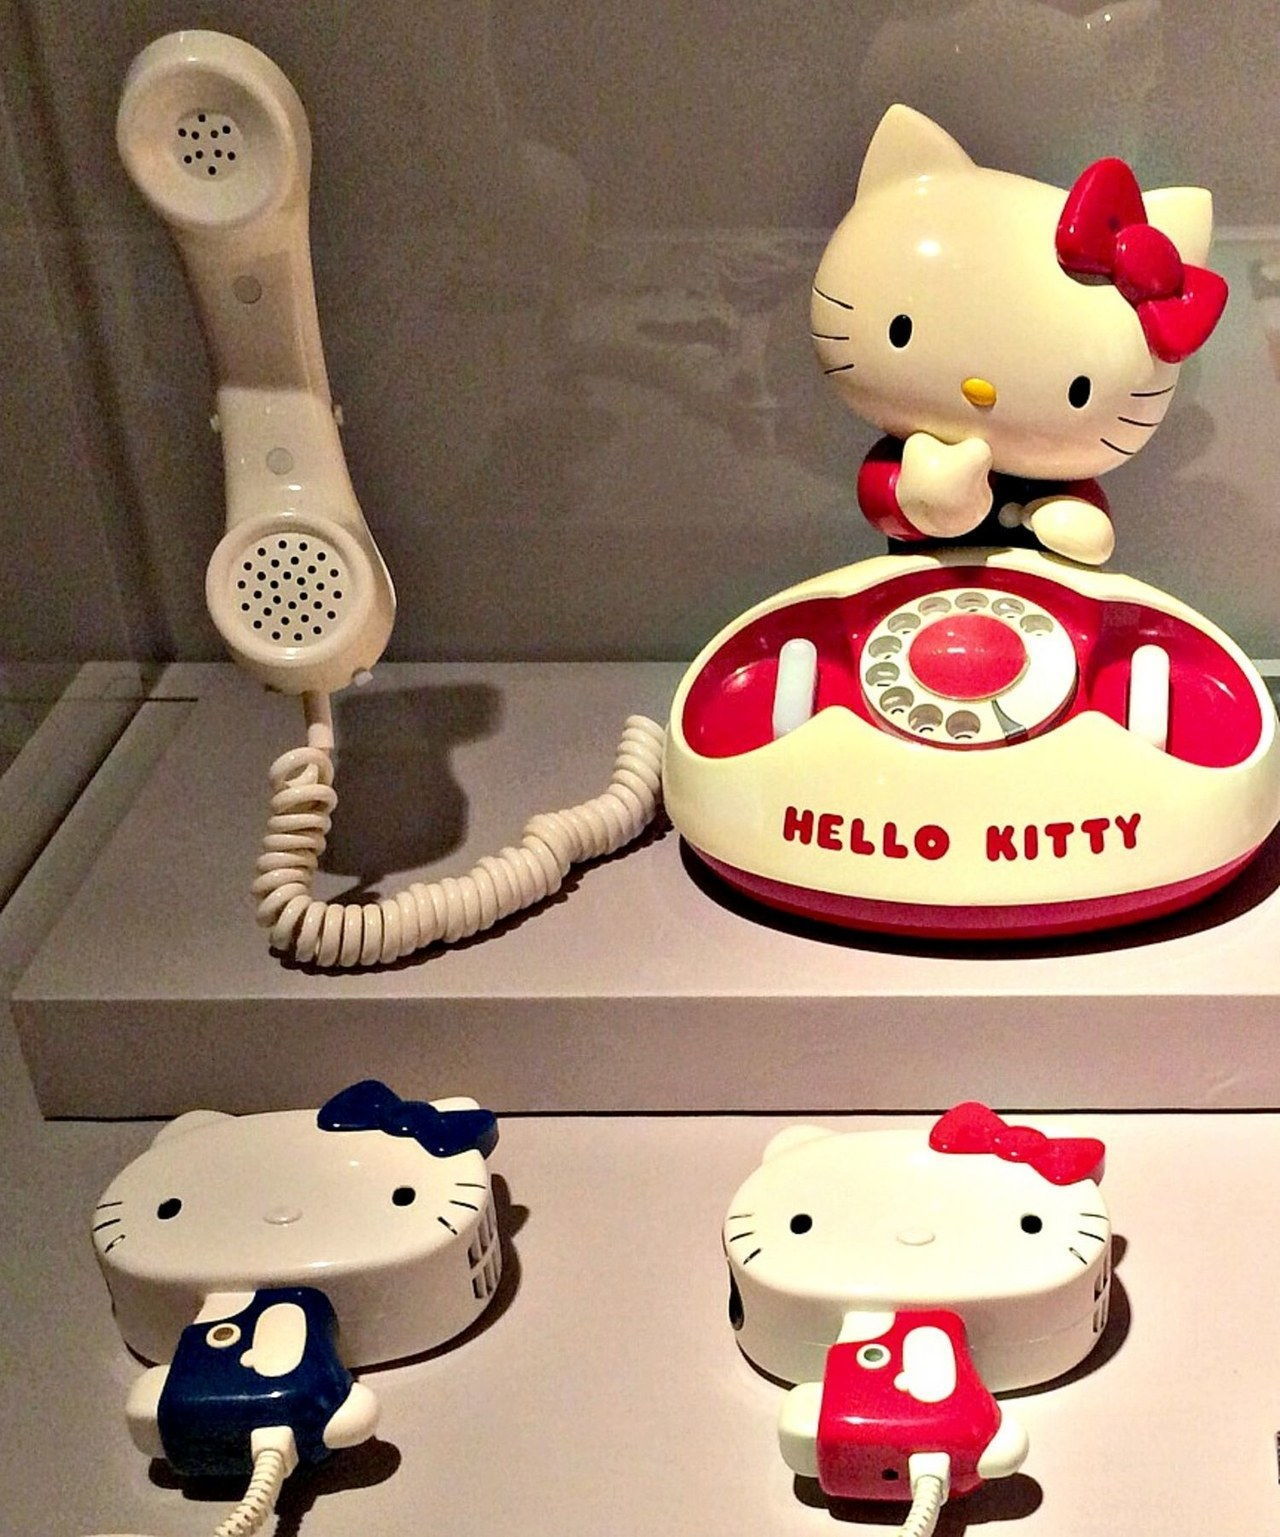 Hallo kitty vintage phones